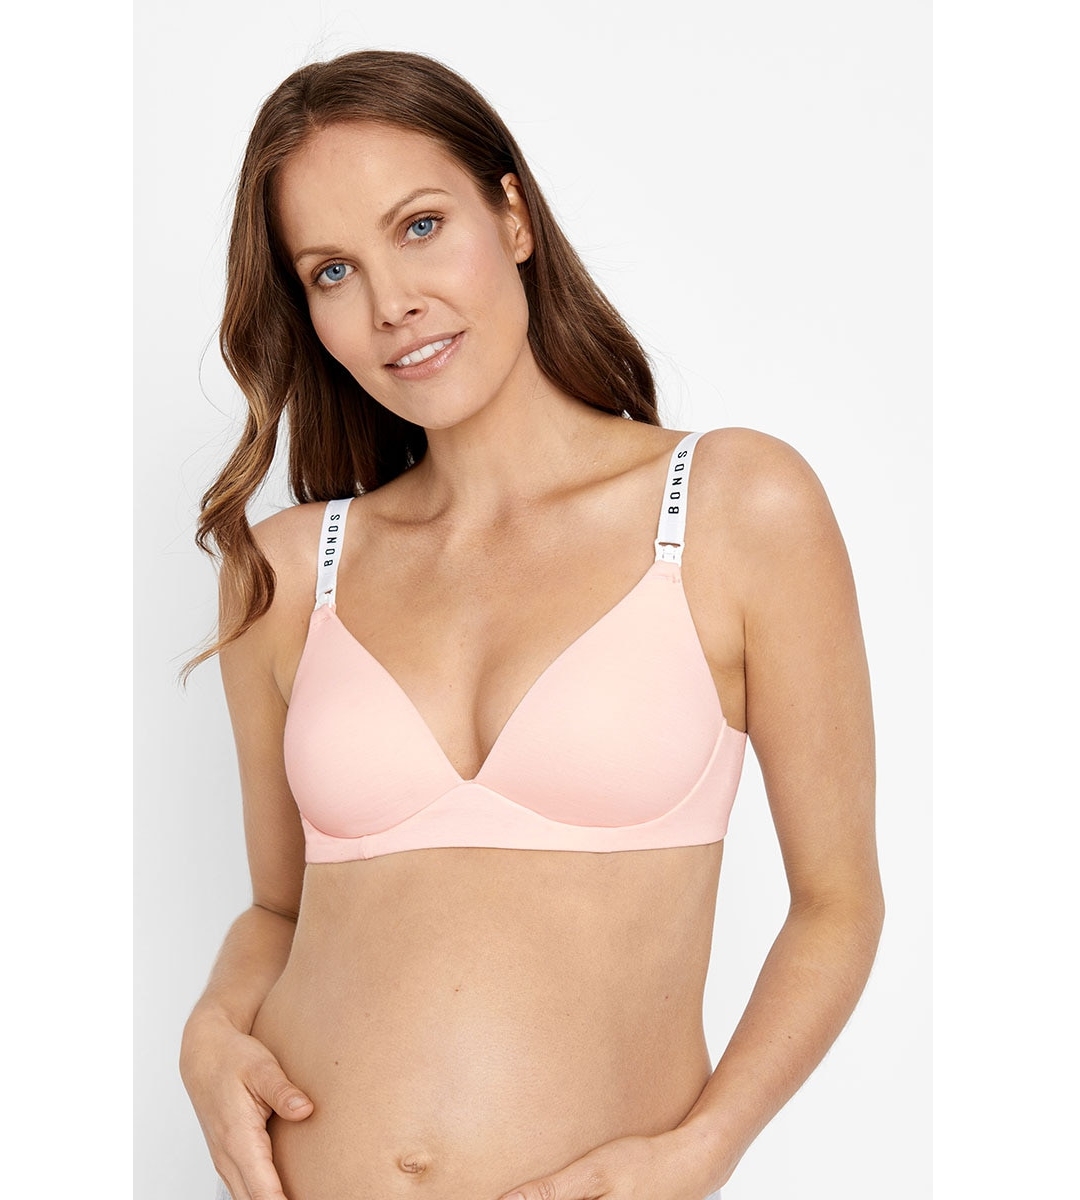 Pregnancy Bra, Maternity Lingerie Online NZ